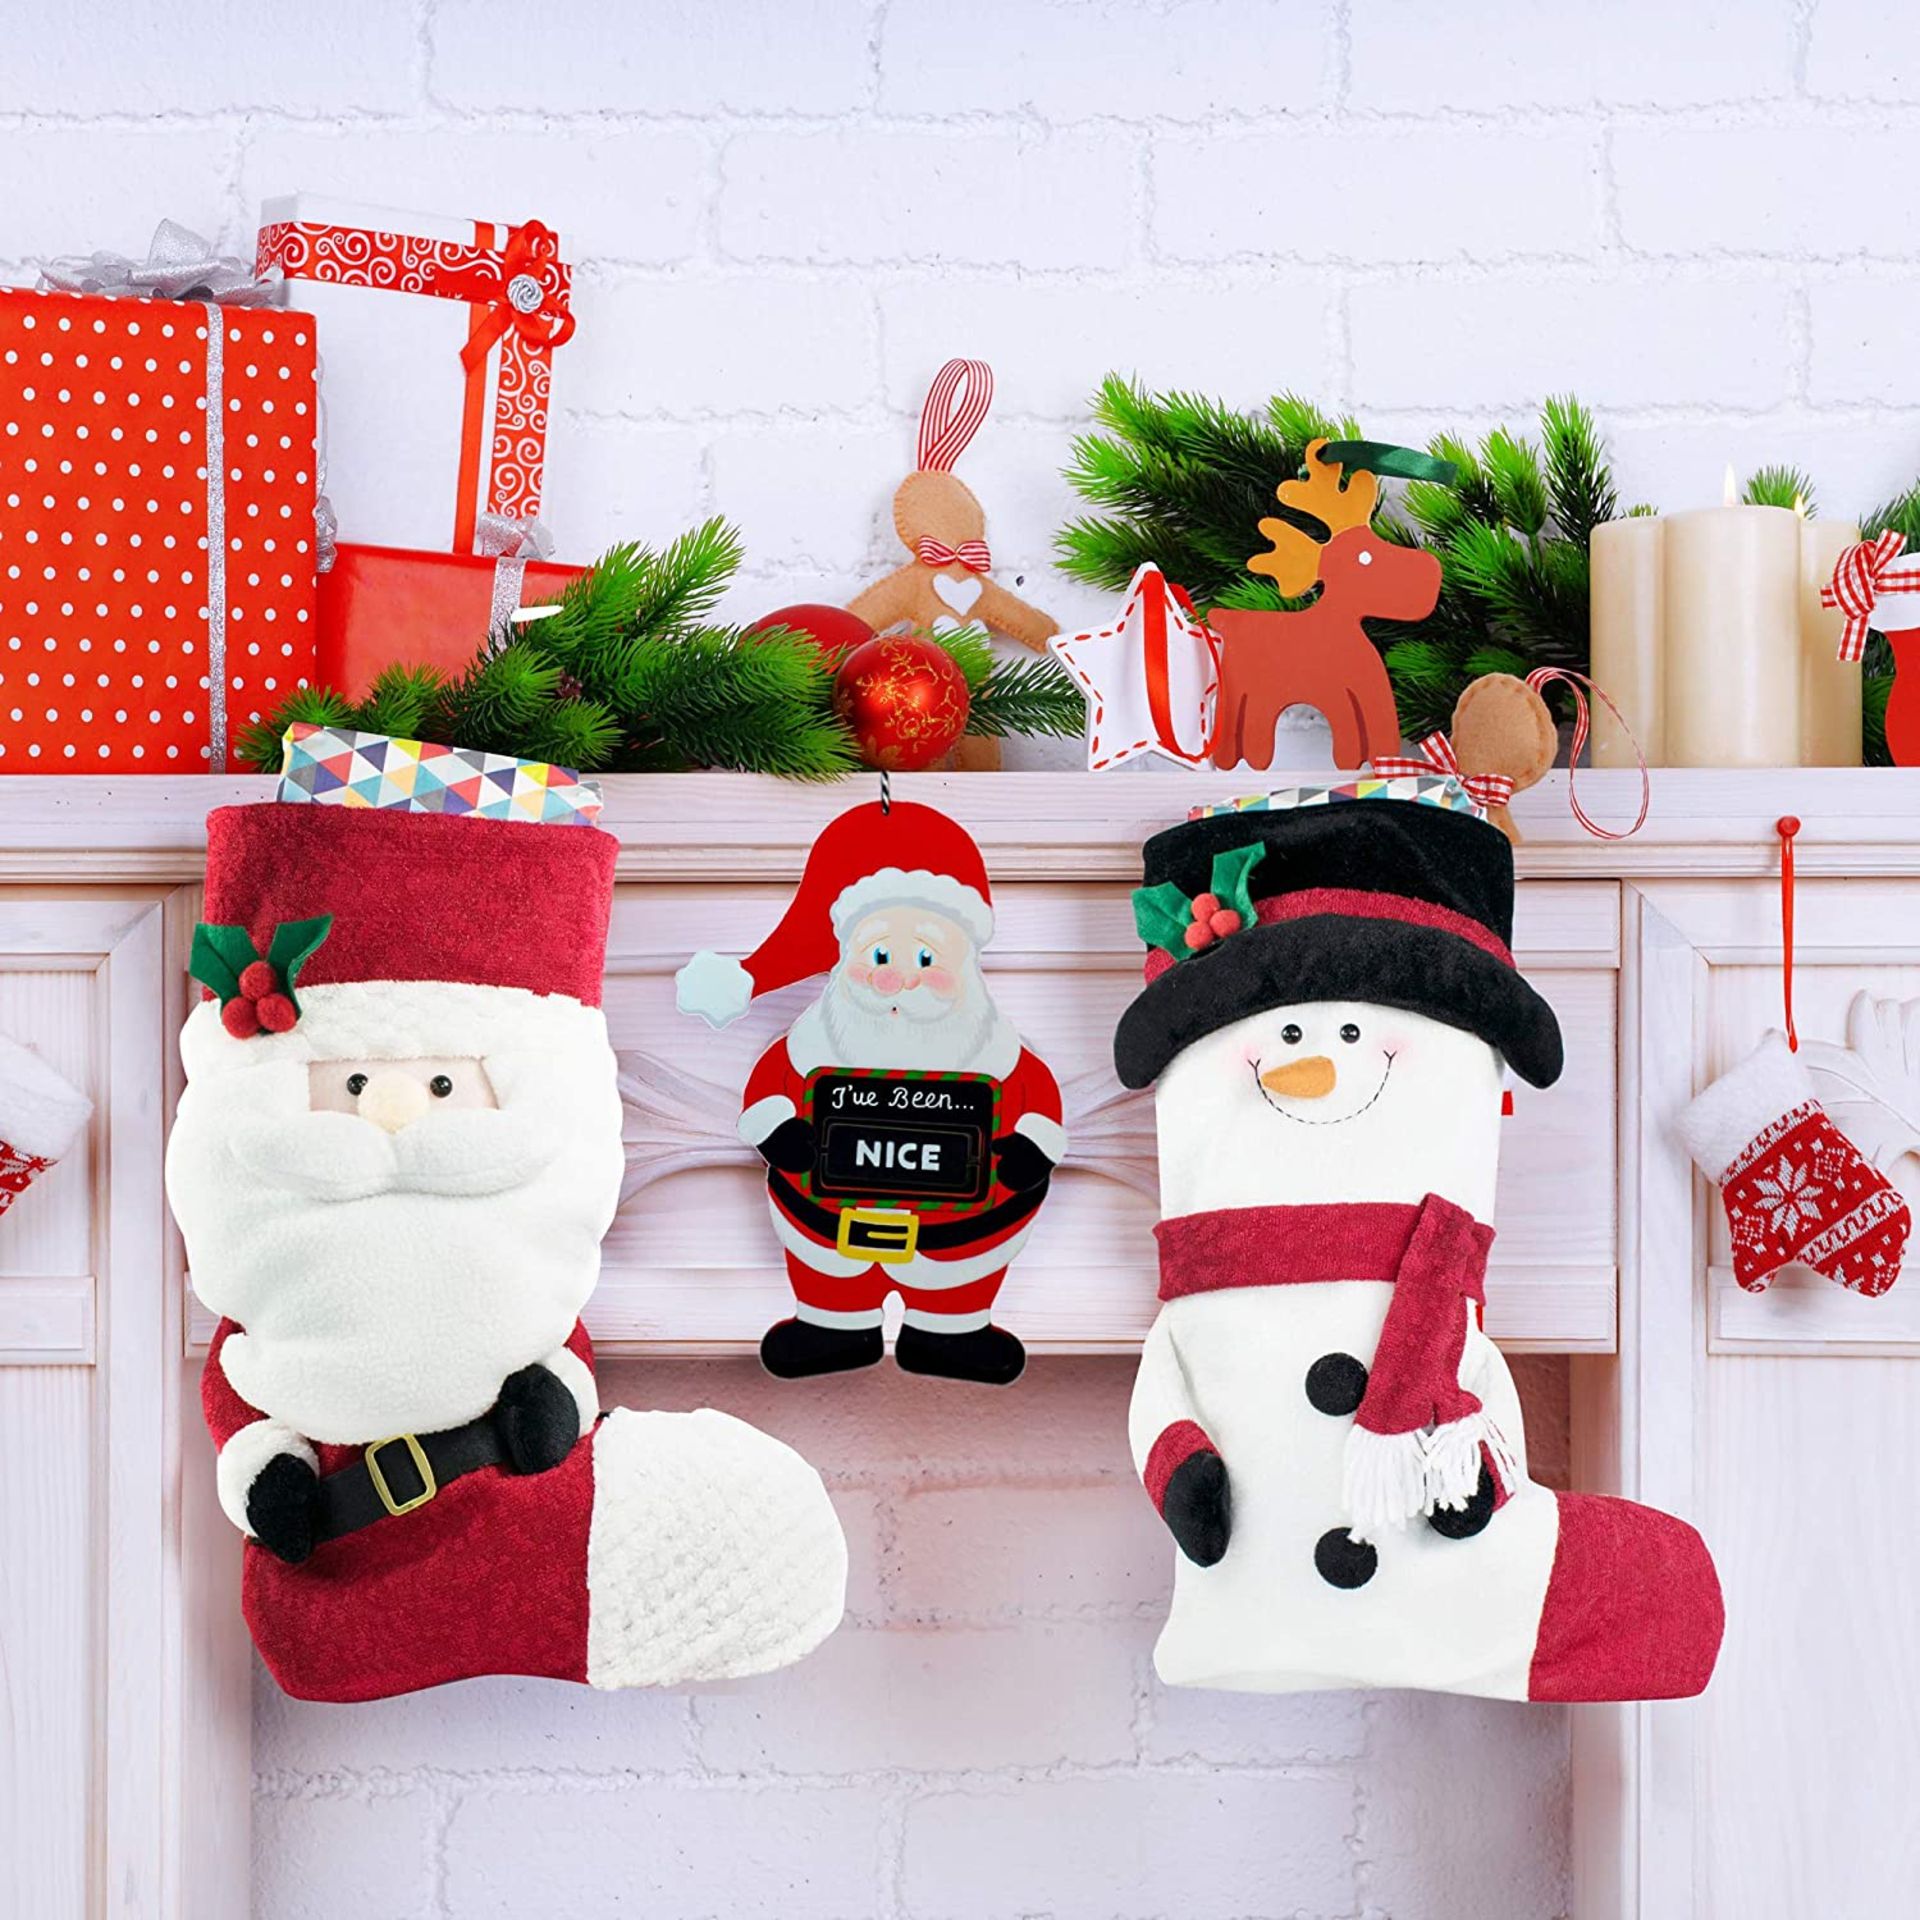 10 x Christmas Kids' Bedroom Door Hangers - 'Naughty Or Nice' - Image 5 of 7